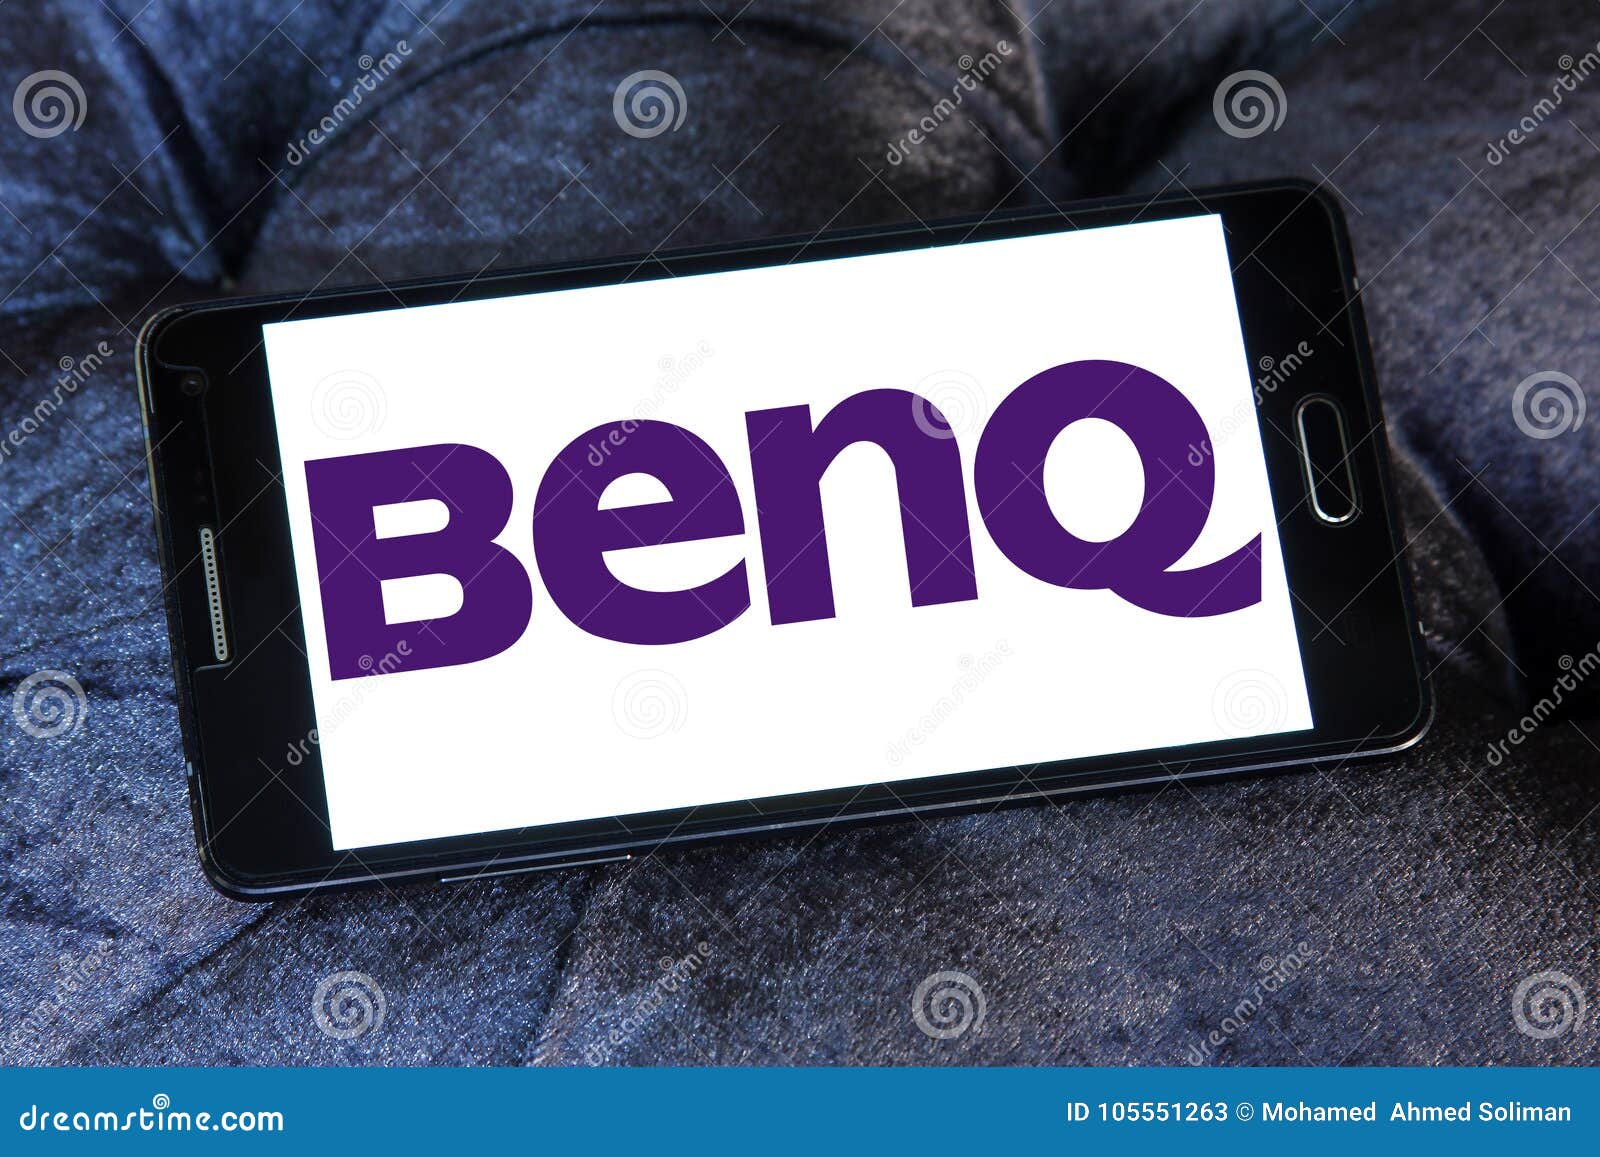 BenQ UK | LinkedIn